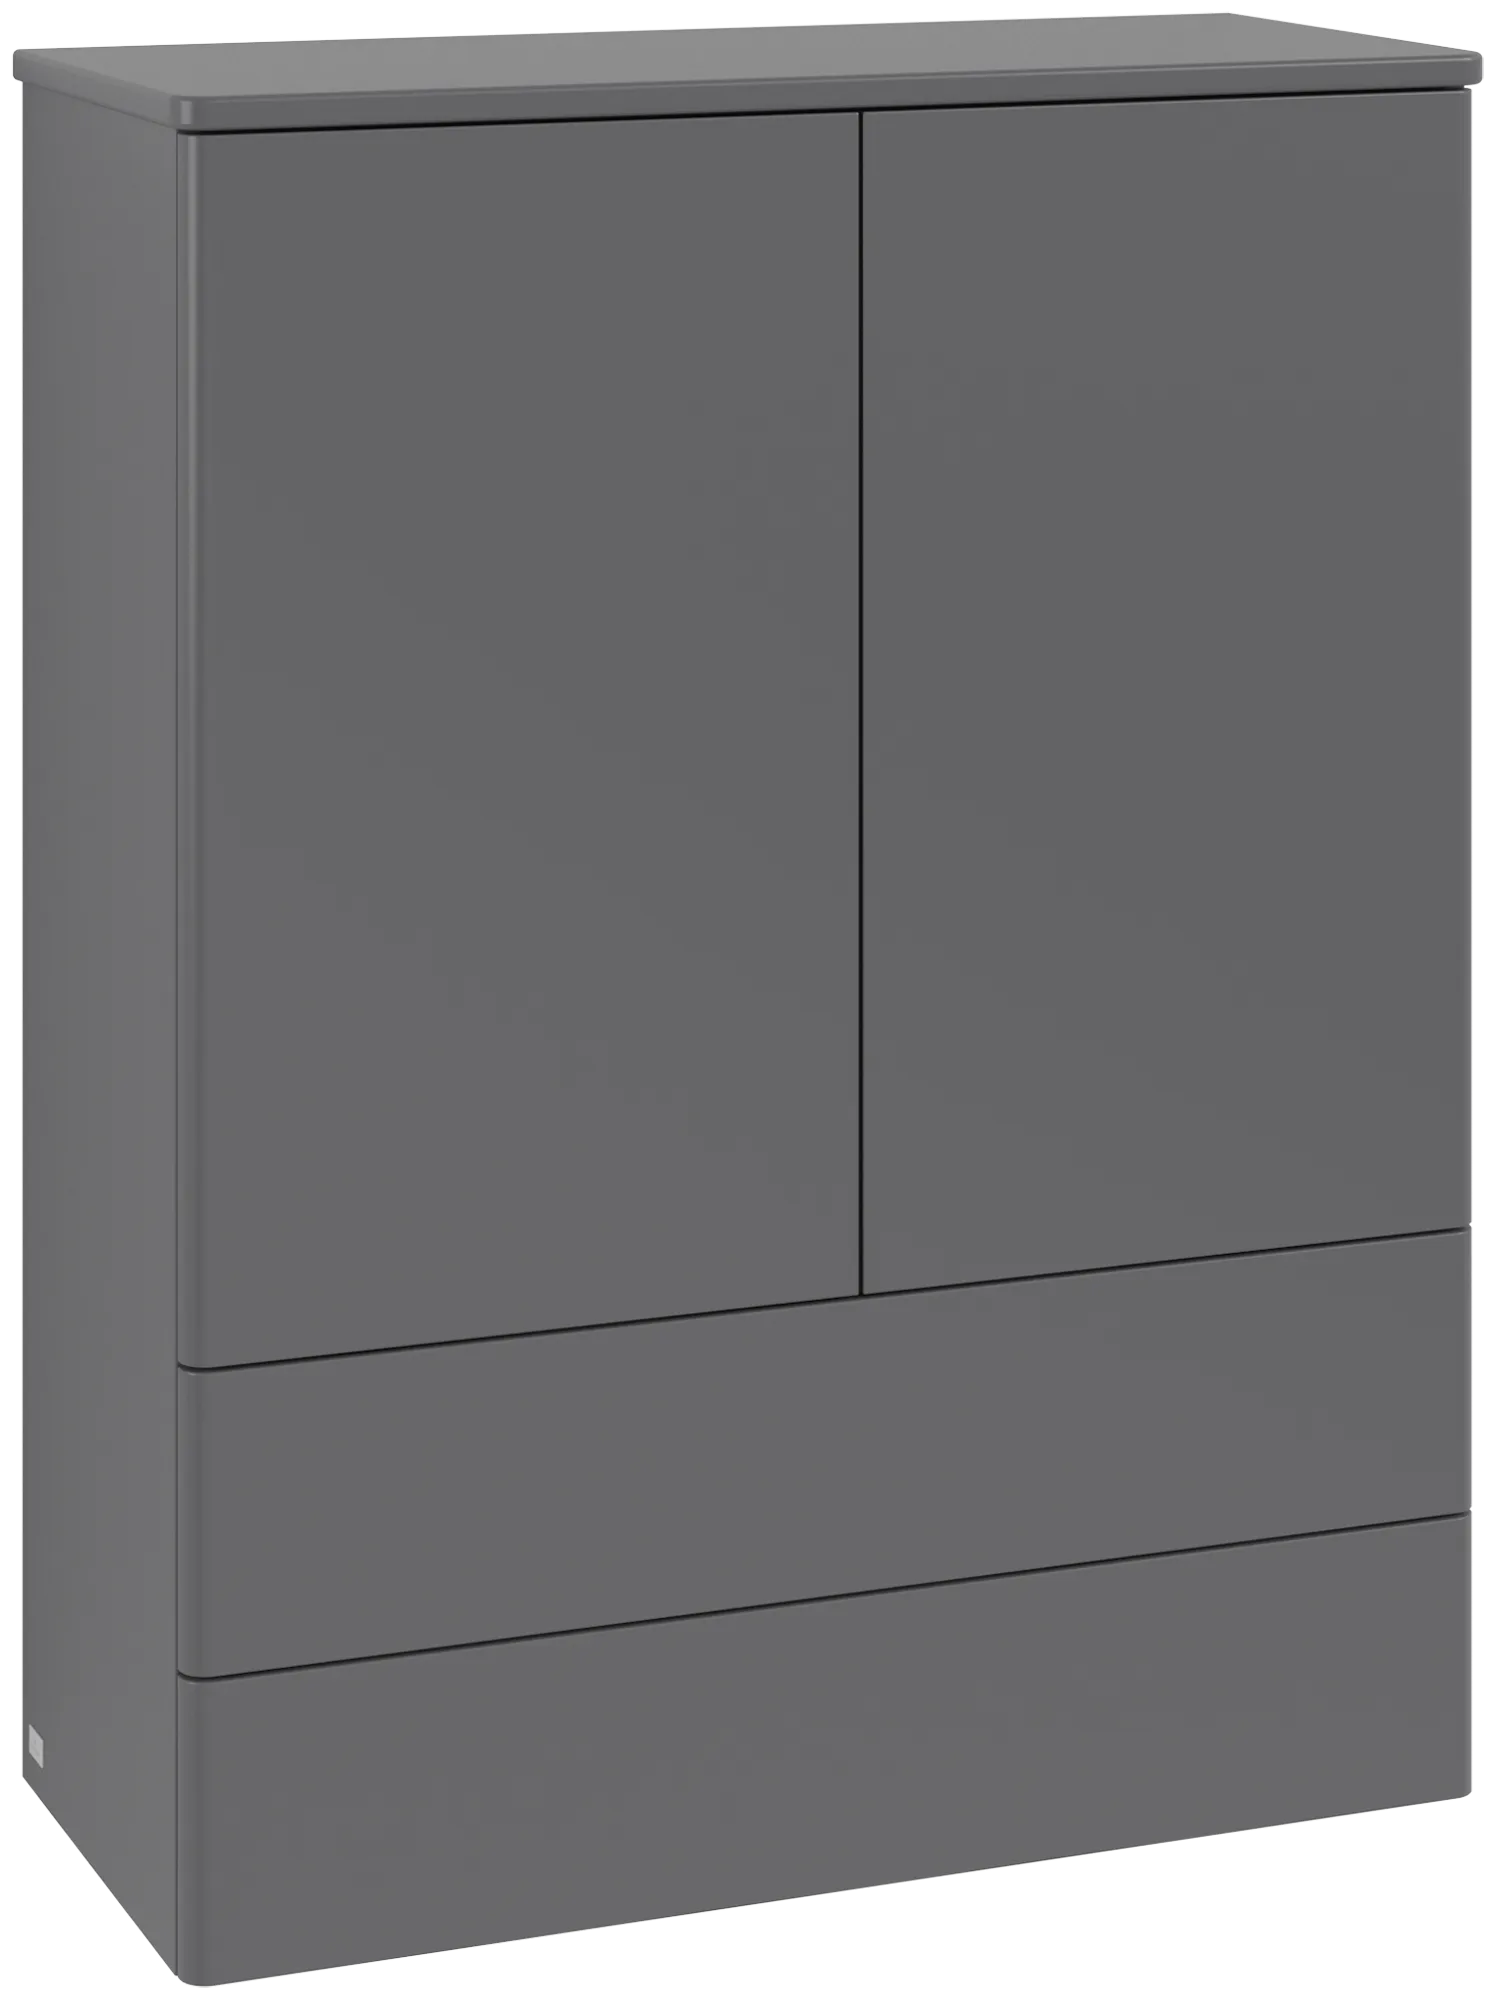 Bild von VILLEROY BOCH Antao Highboard, mit Beleuchtung, 2 Türen, 814 x 1039 x 356 mm, Front ohne Struktur, Anthracite Matt Lacquer / Anthracite Matt Lacquer #L47000GK